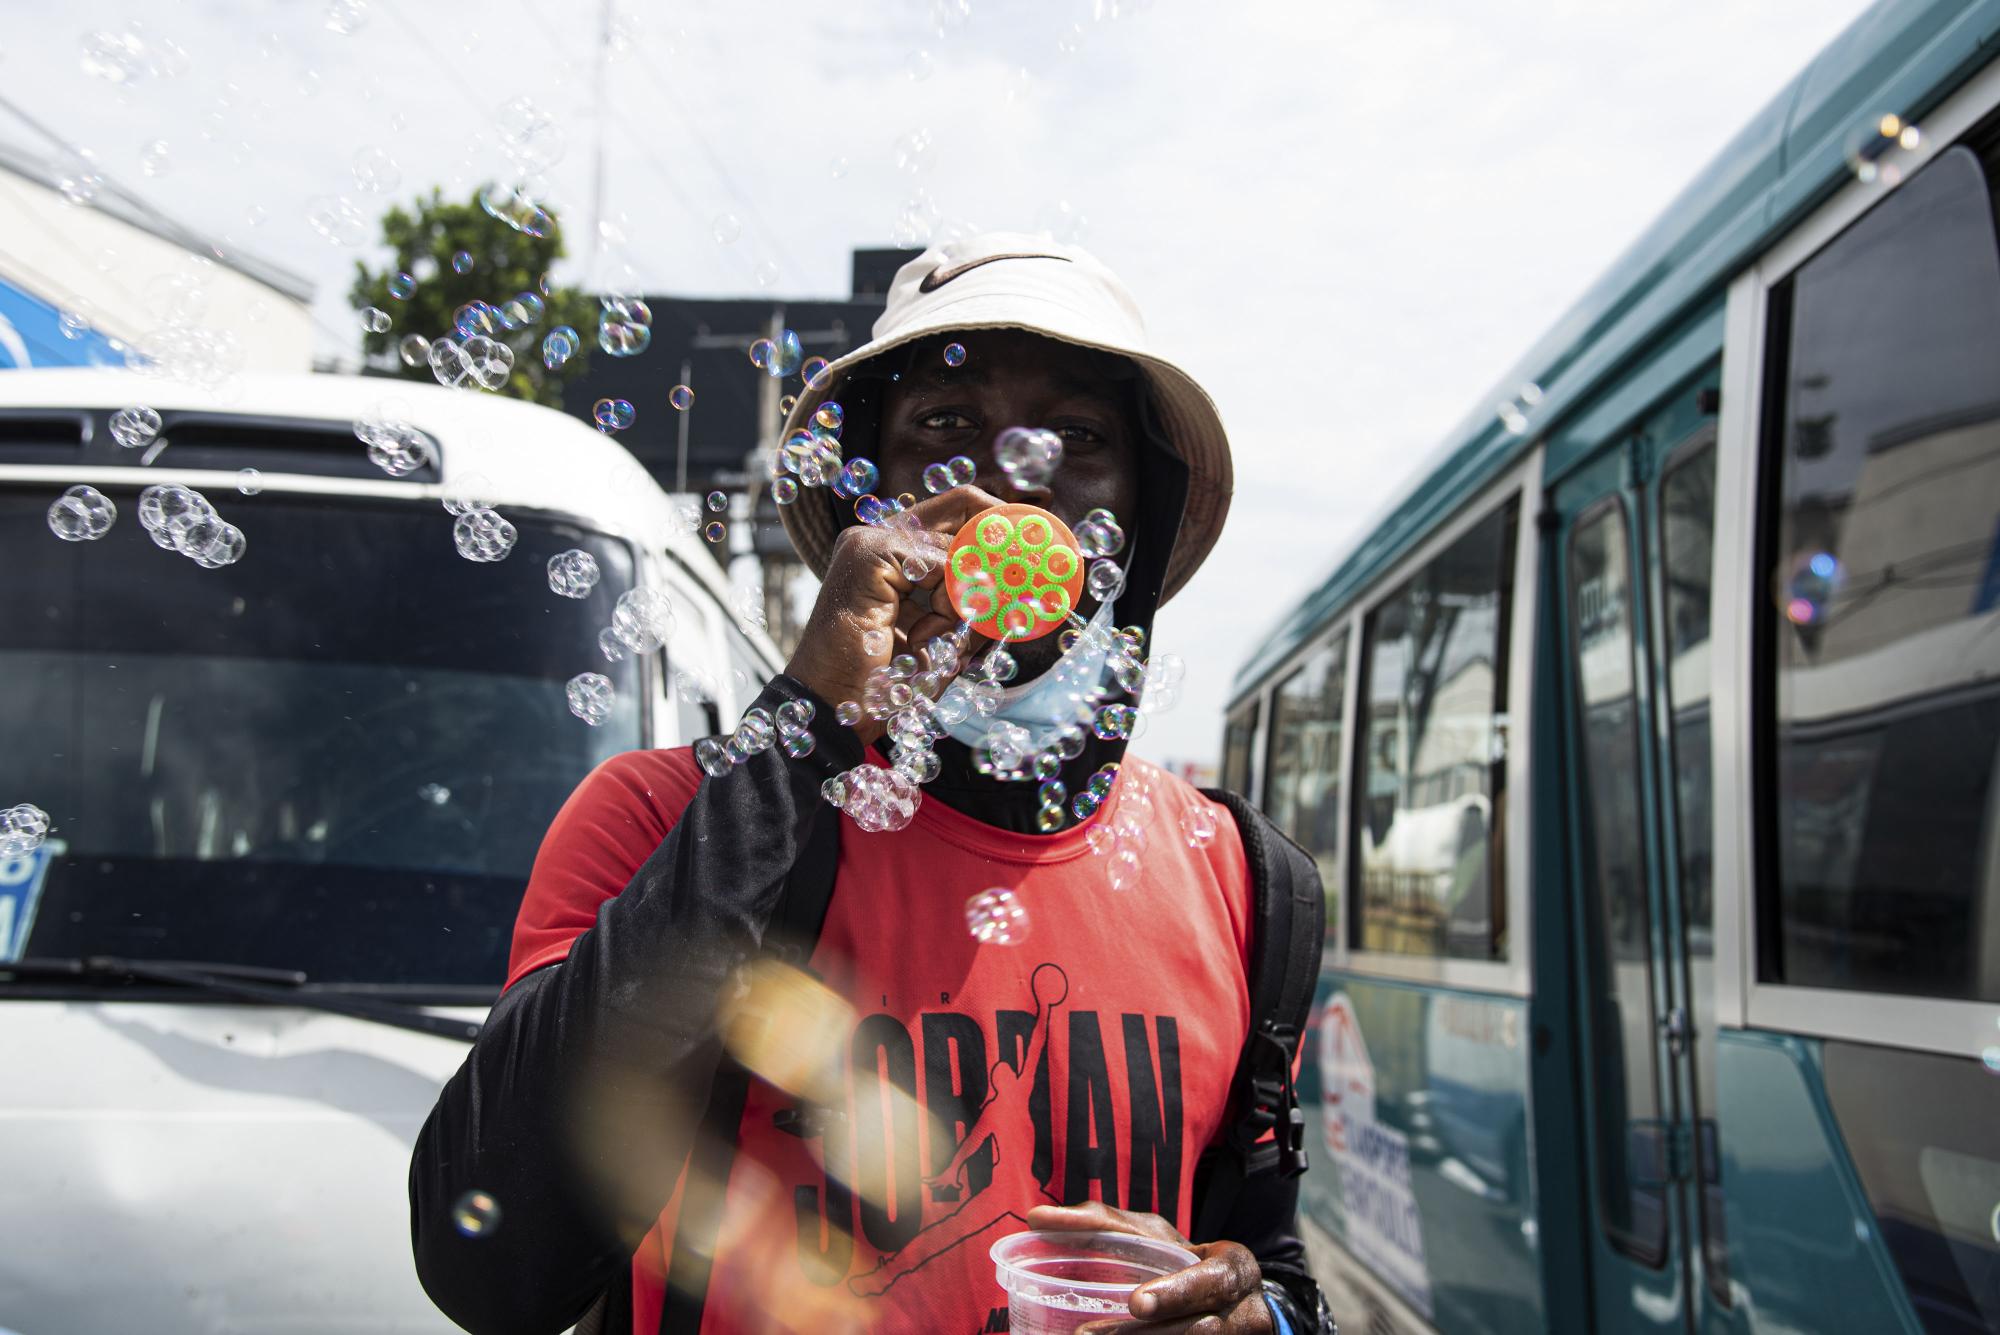 Un hombre de nacionalidad haitiana recorre las calles vendiendo juguetes de bajo costo (Foto: Dania Acevedo)